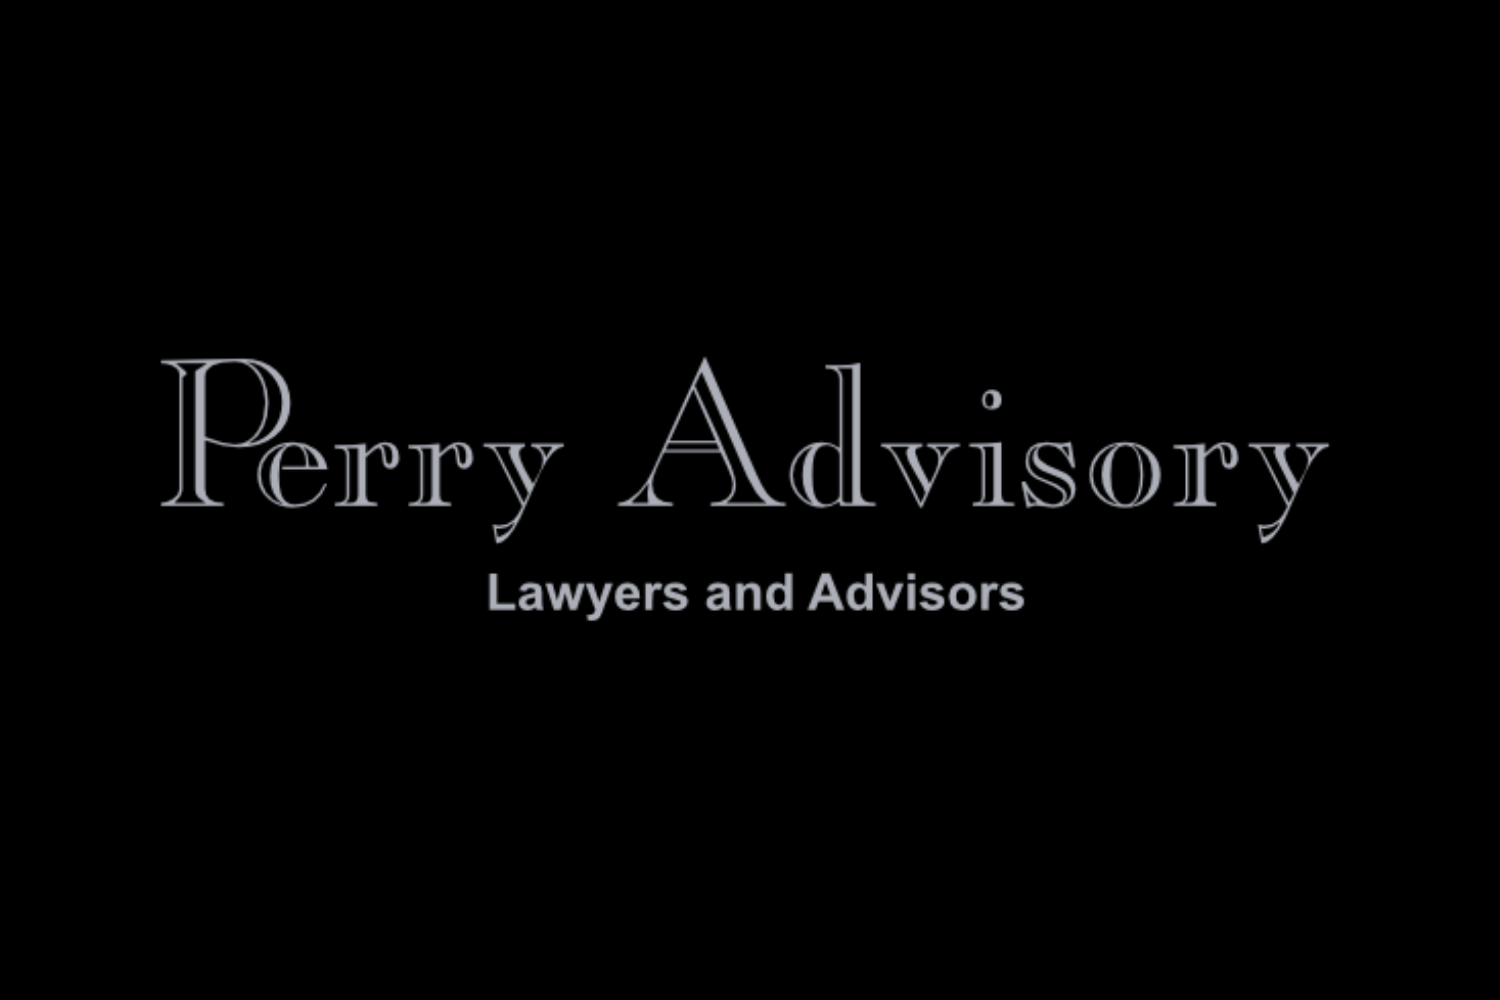 Perry Advisory Andrew